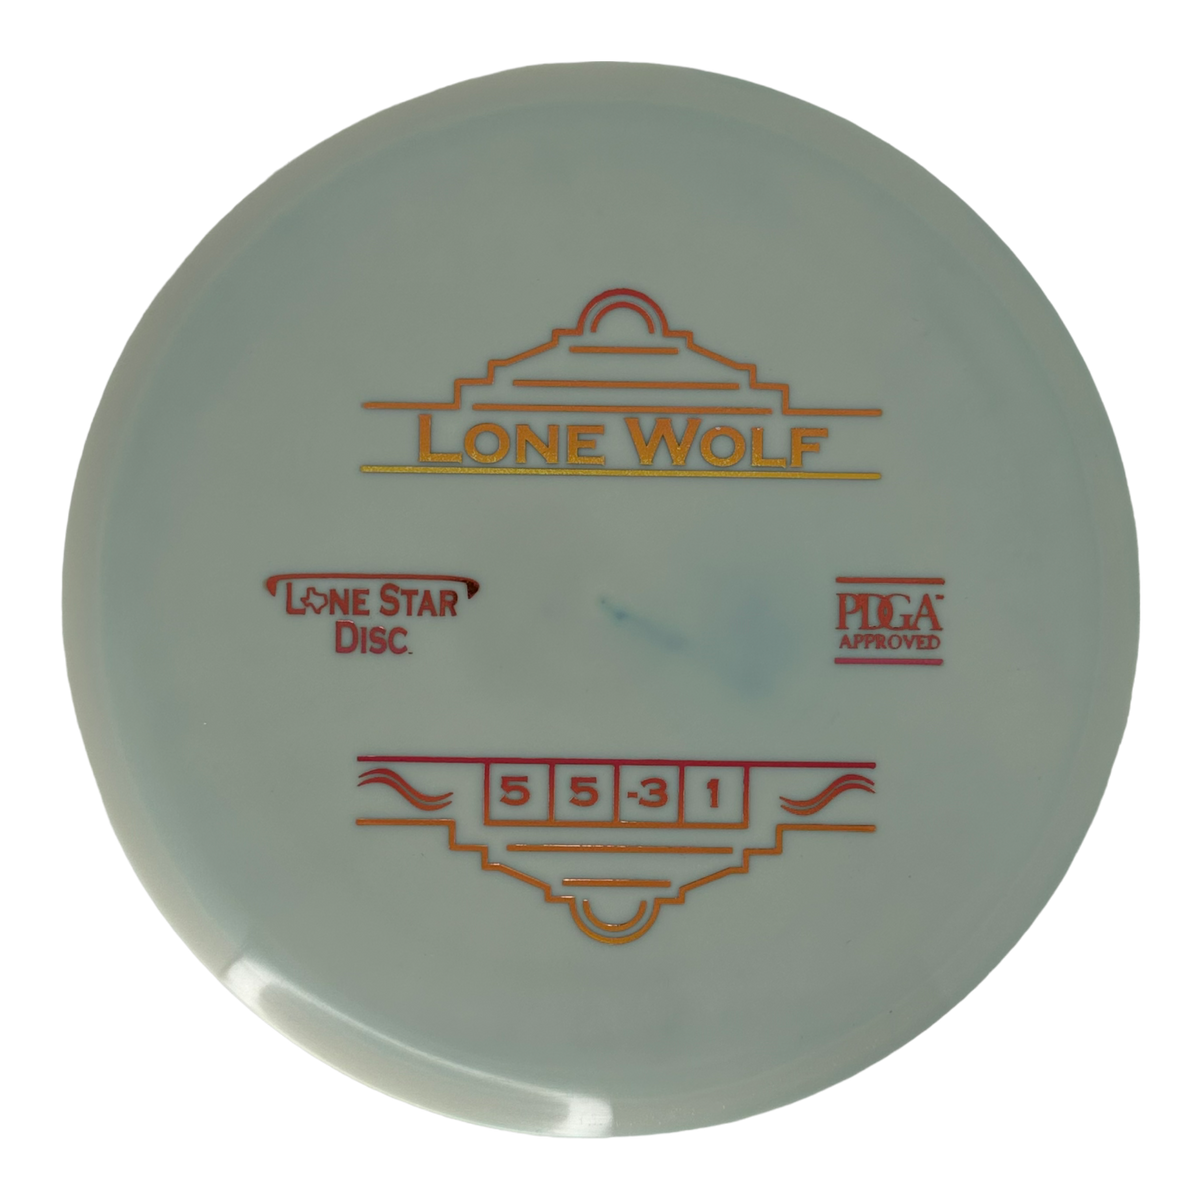 Lone Star Disc Alpha Lone Wolf